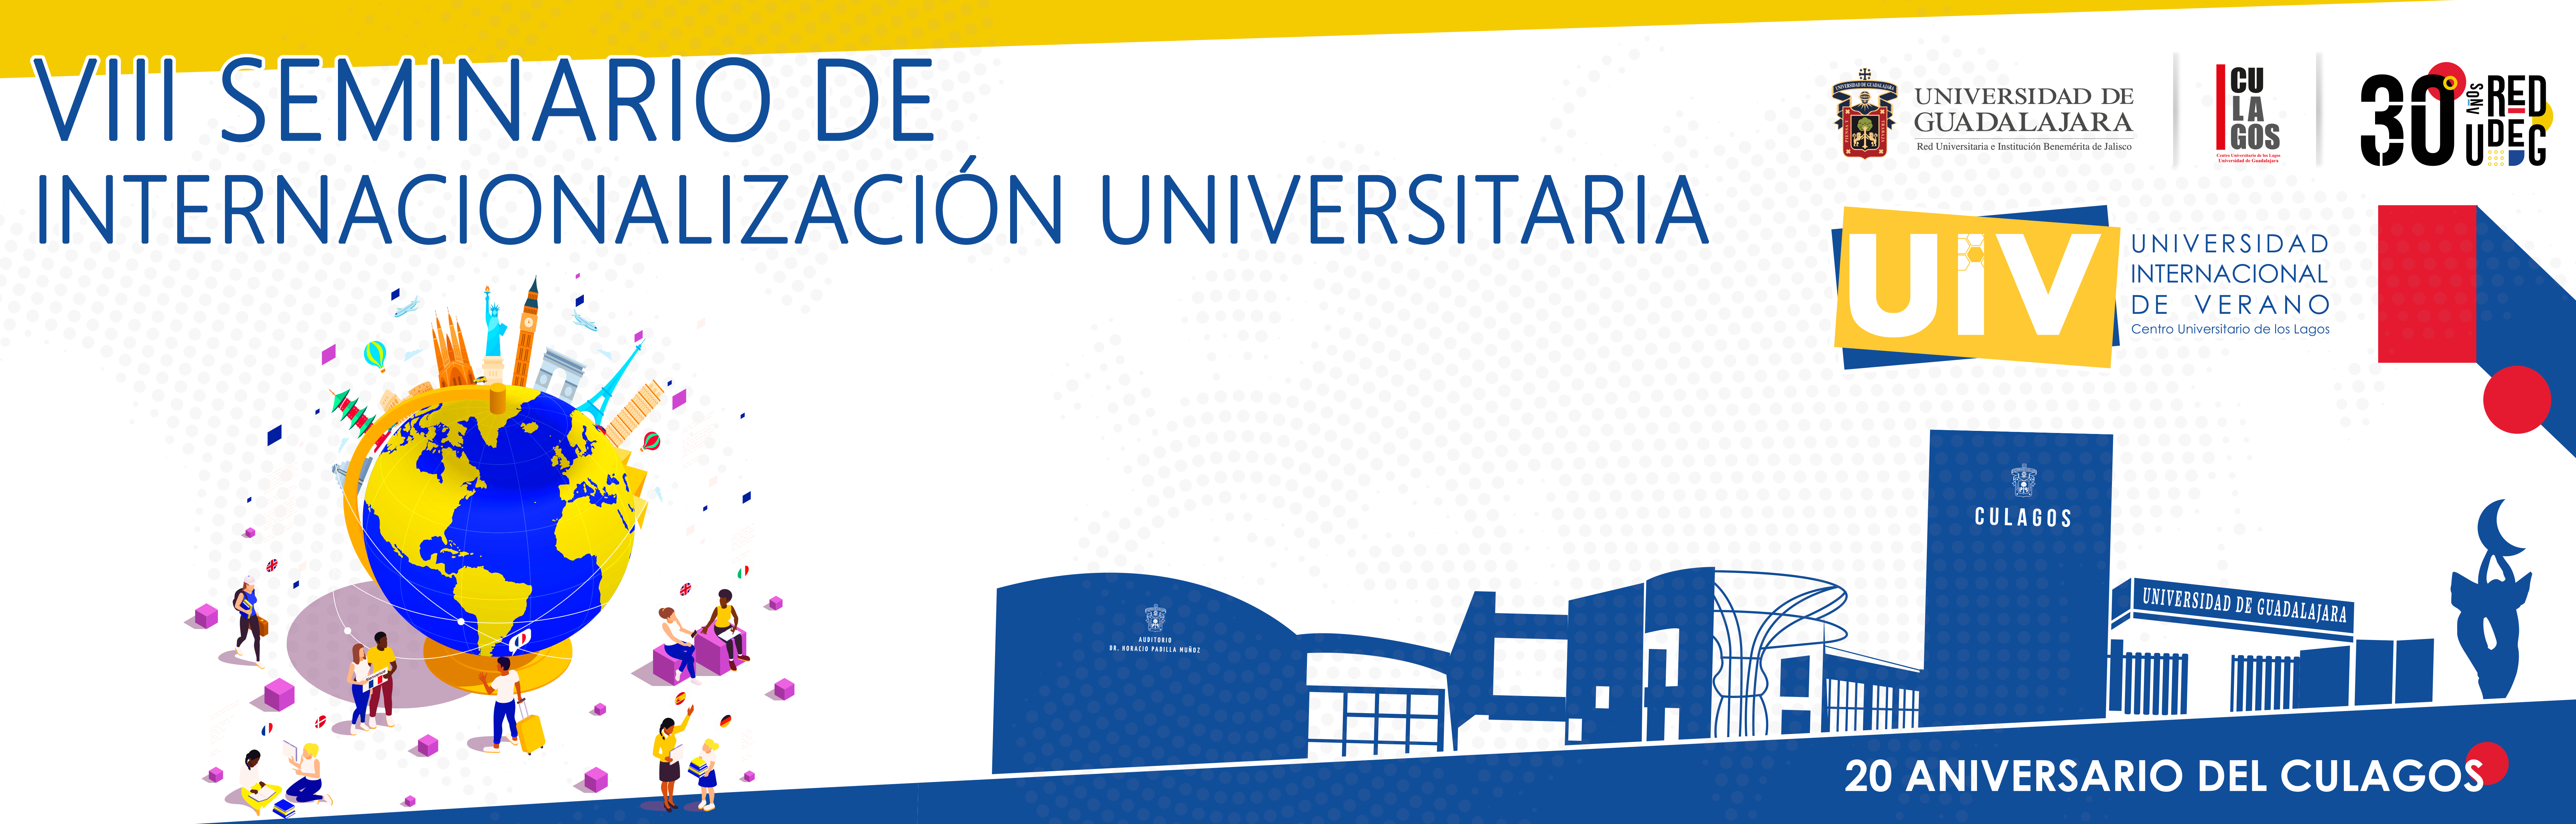 VIII Seminario de Internacionalización Universitaria